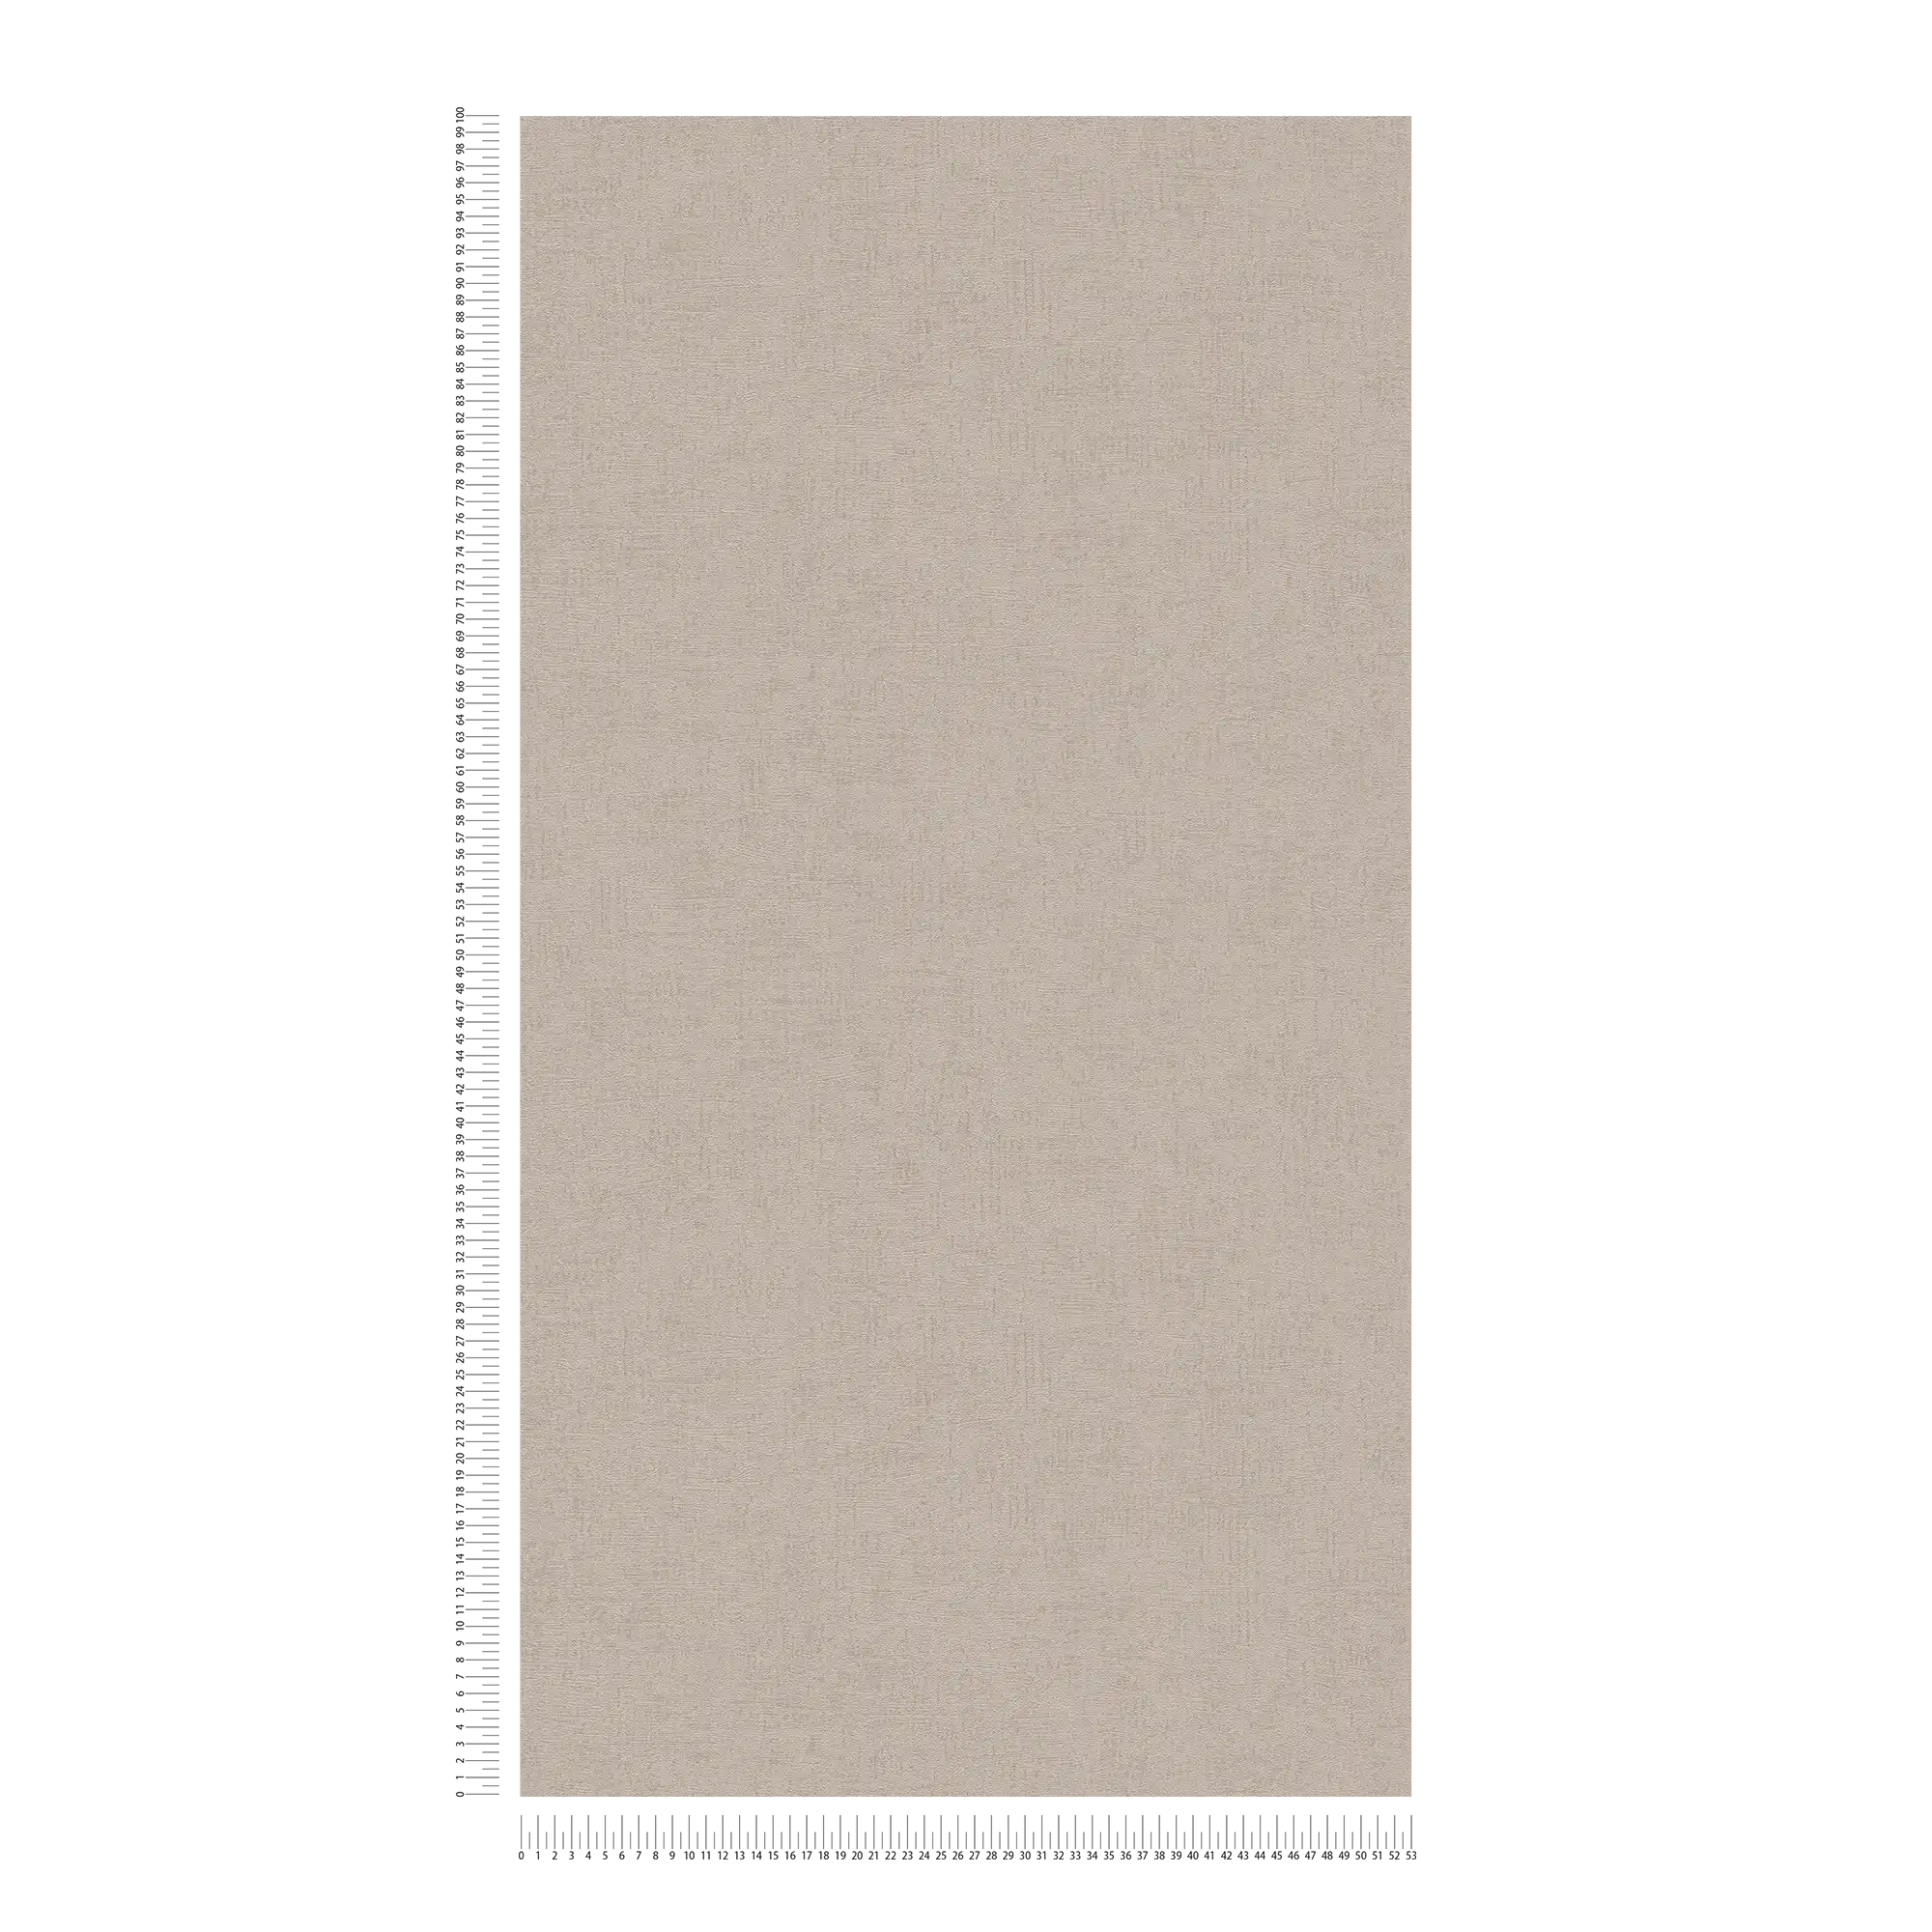             Carta da parati grigio-marrone con lucentezza metallica e struttura in rilievo - marrone, metallizzato
        